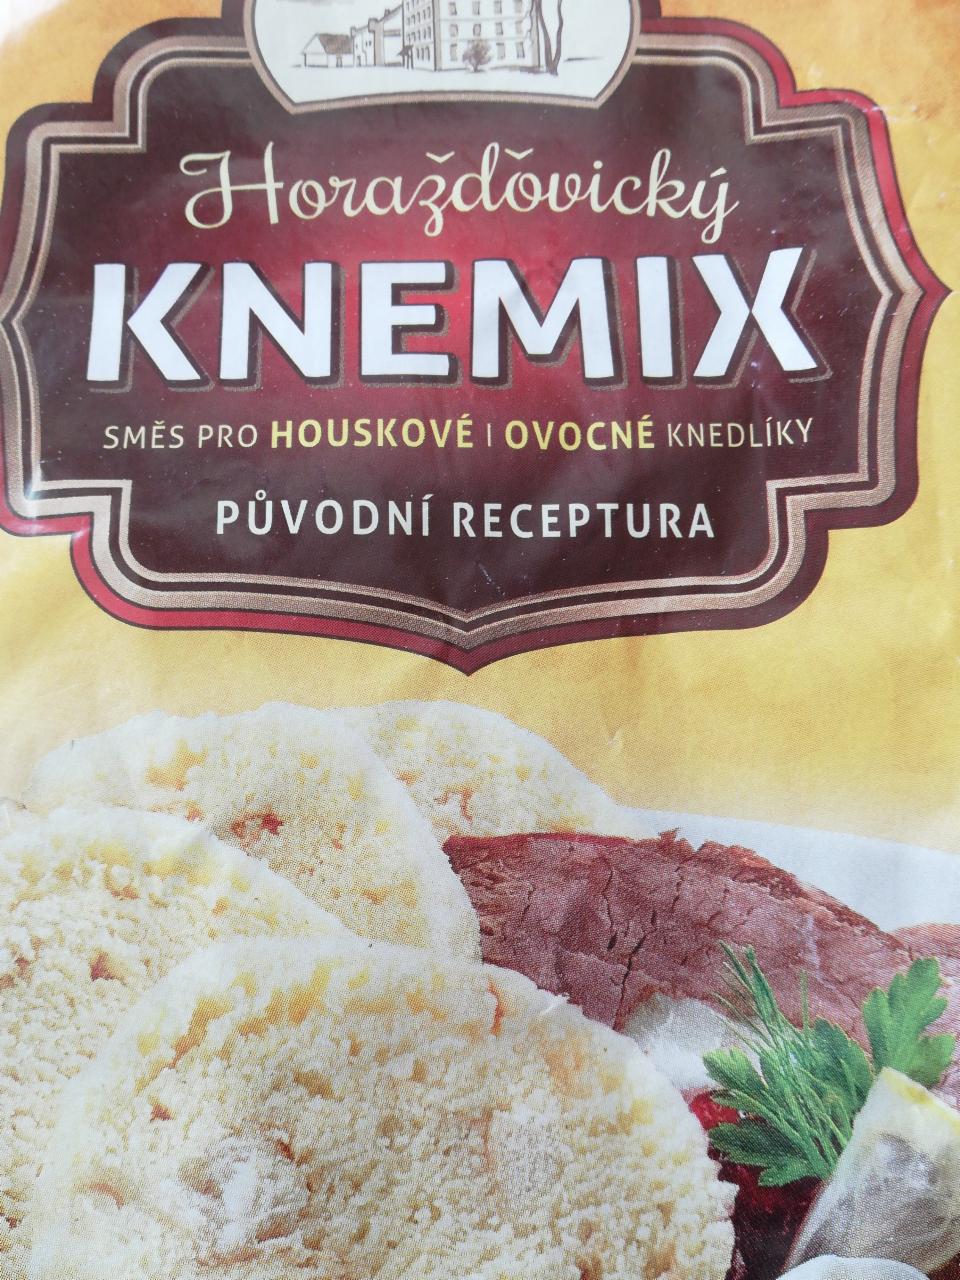 Fotografie - Horažďovický knemix směs pro houskové i ovocné knedlíky